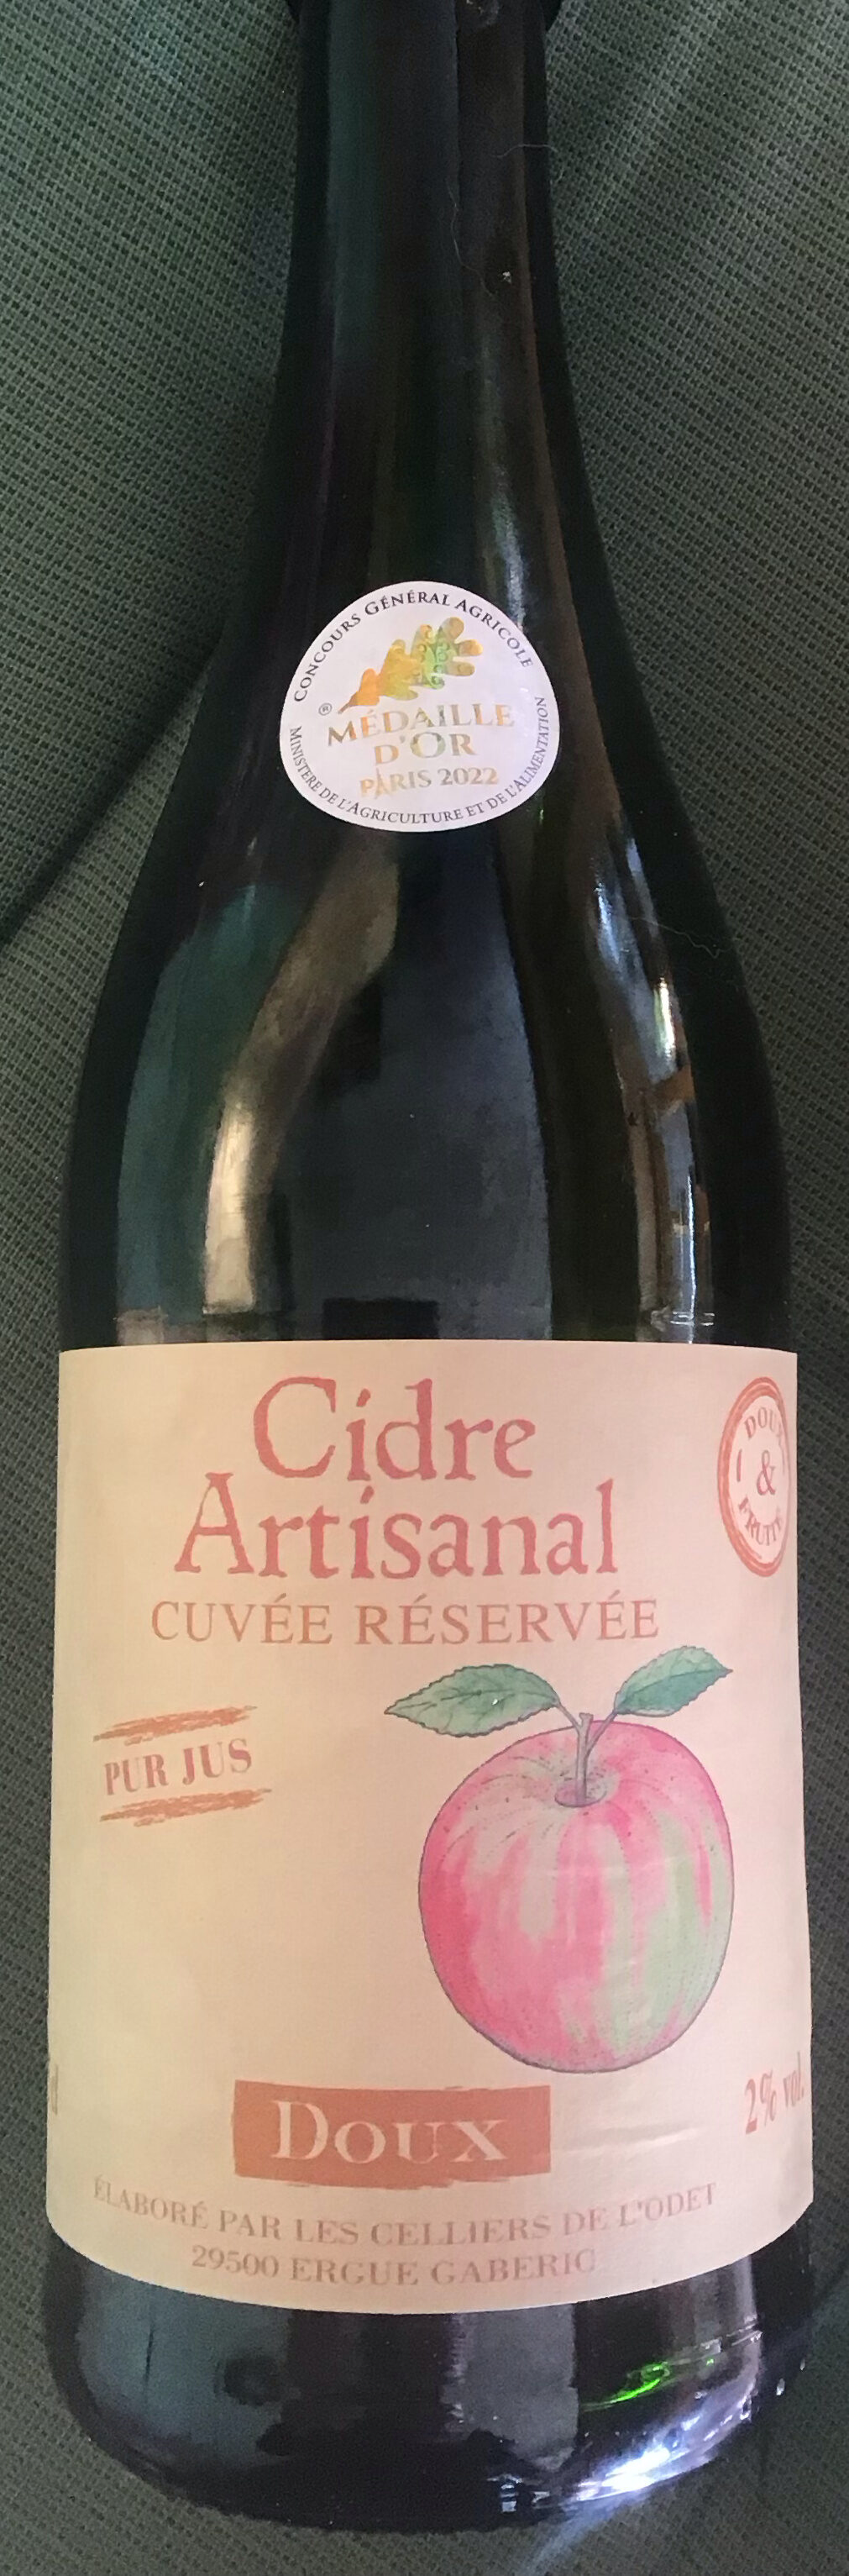 Cidre artisanal - Cuvée réservée - Produit